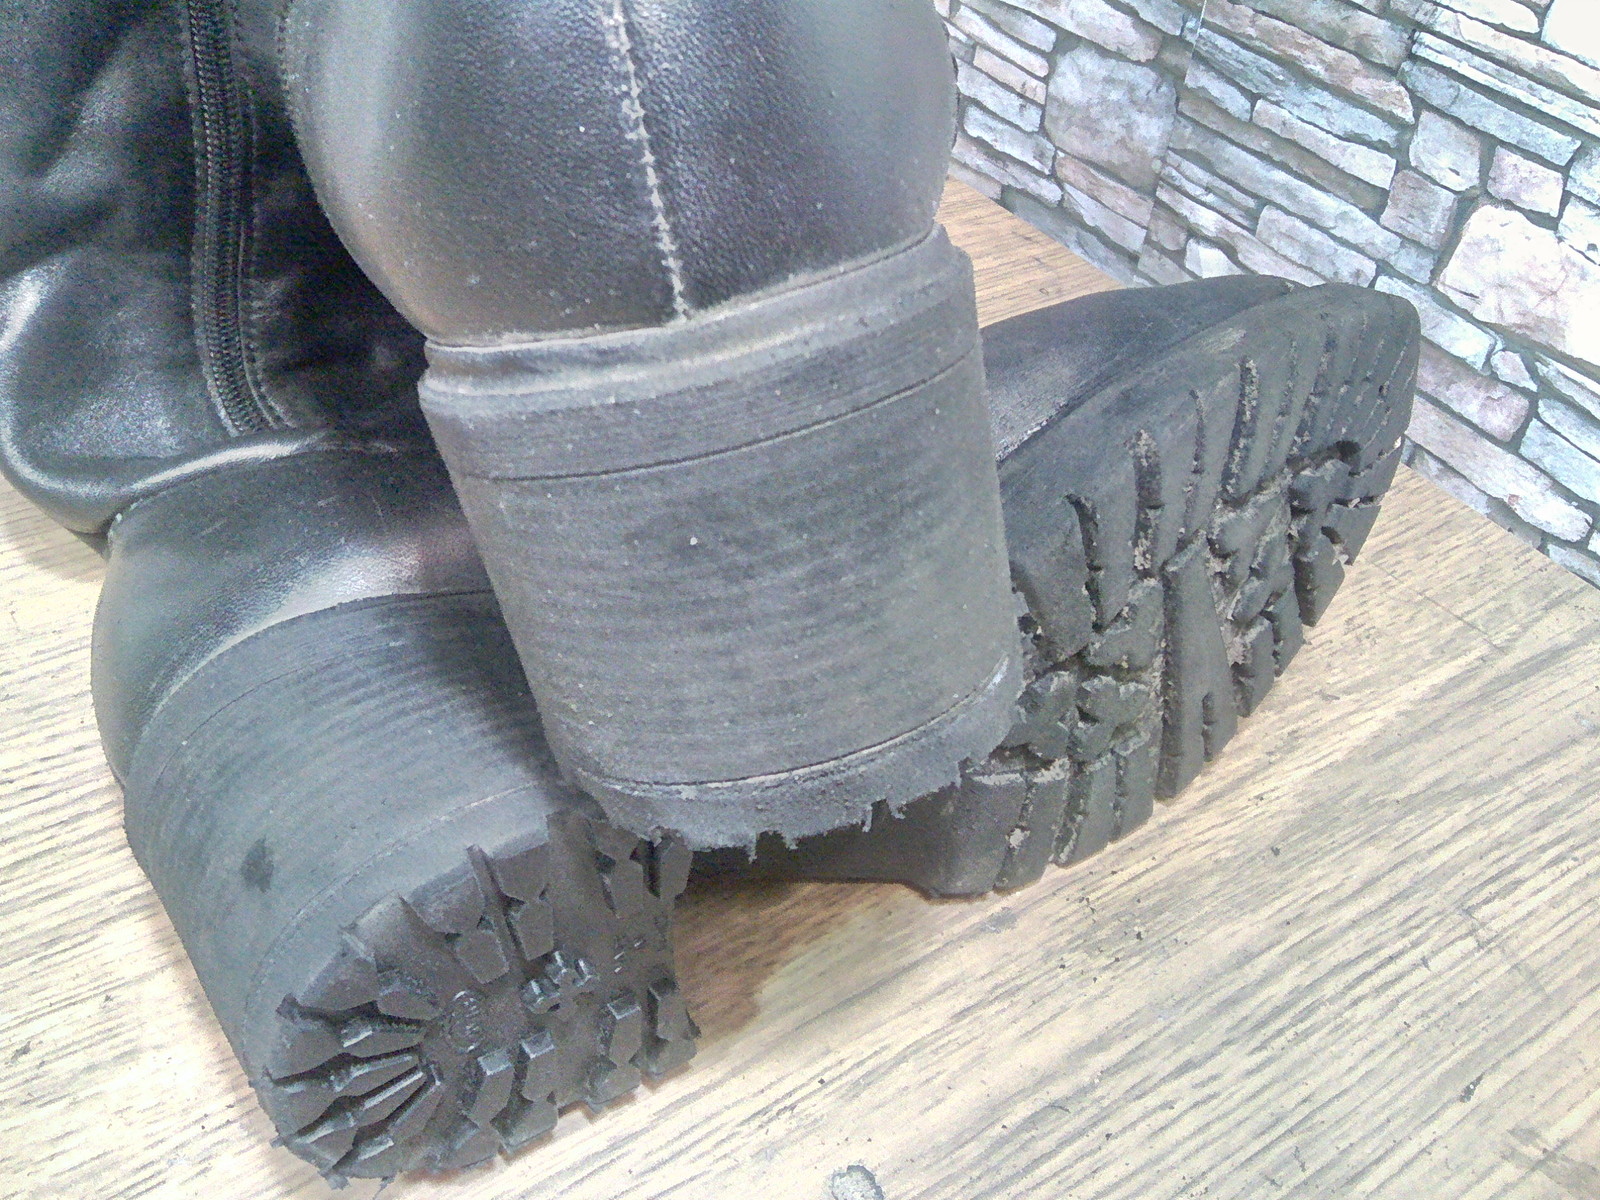 Women's tractor heels. - My, Shoe repair, , Longpost, Heels